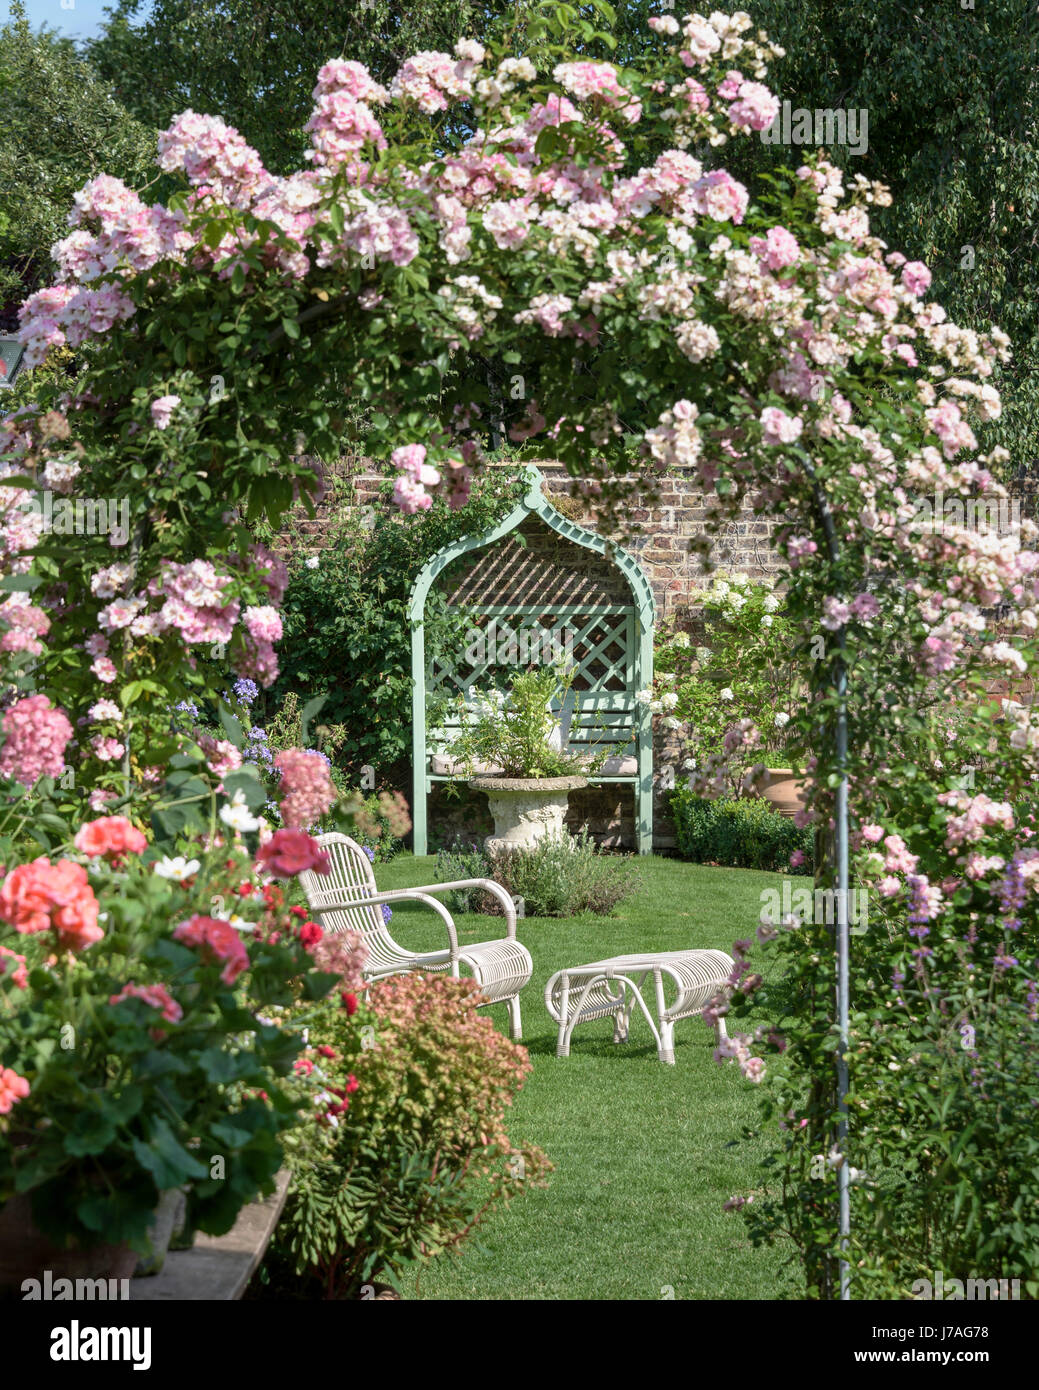 Wicker Gartenmöbel durch einen rose Bogen in einen englischen Garten zu sehen. Stockfoto